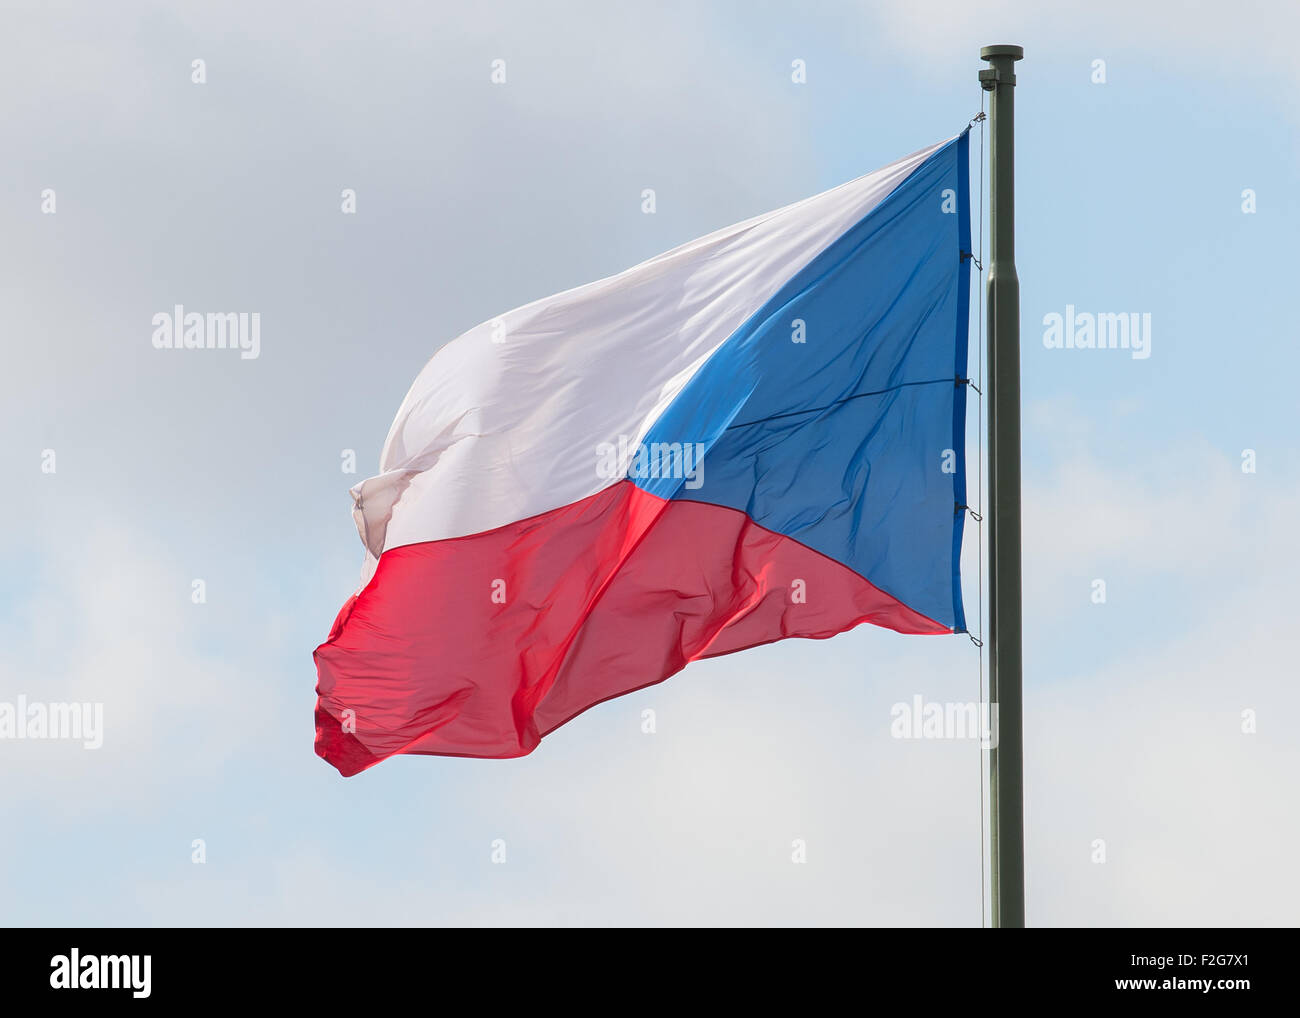 11.03.2015, Prague, Prague, Czech Republic - Flag of the Czech Republic. 0CE150311D008CAROEX.JPG - NOT for SALE in G E R M A N Stock Photo